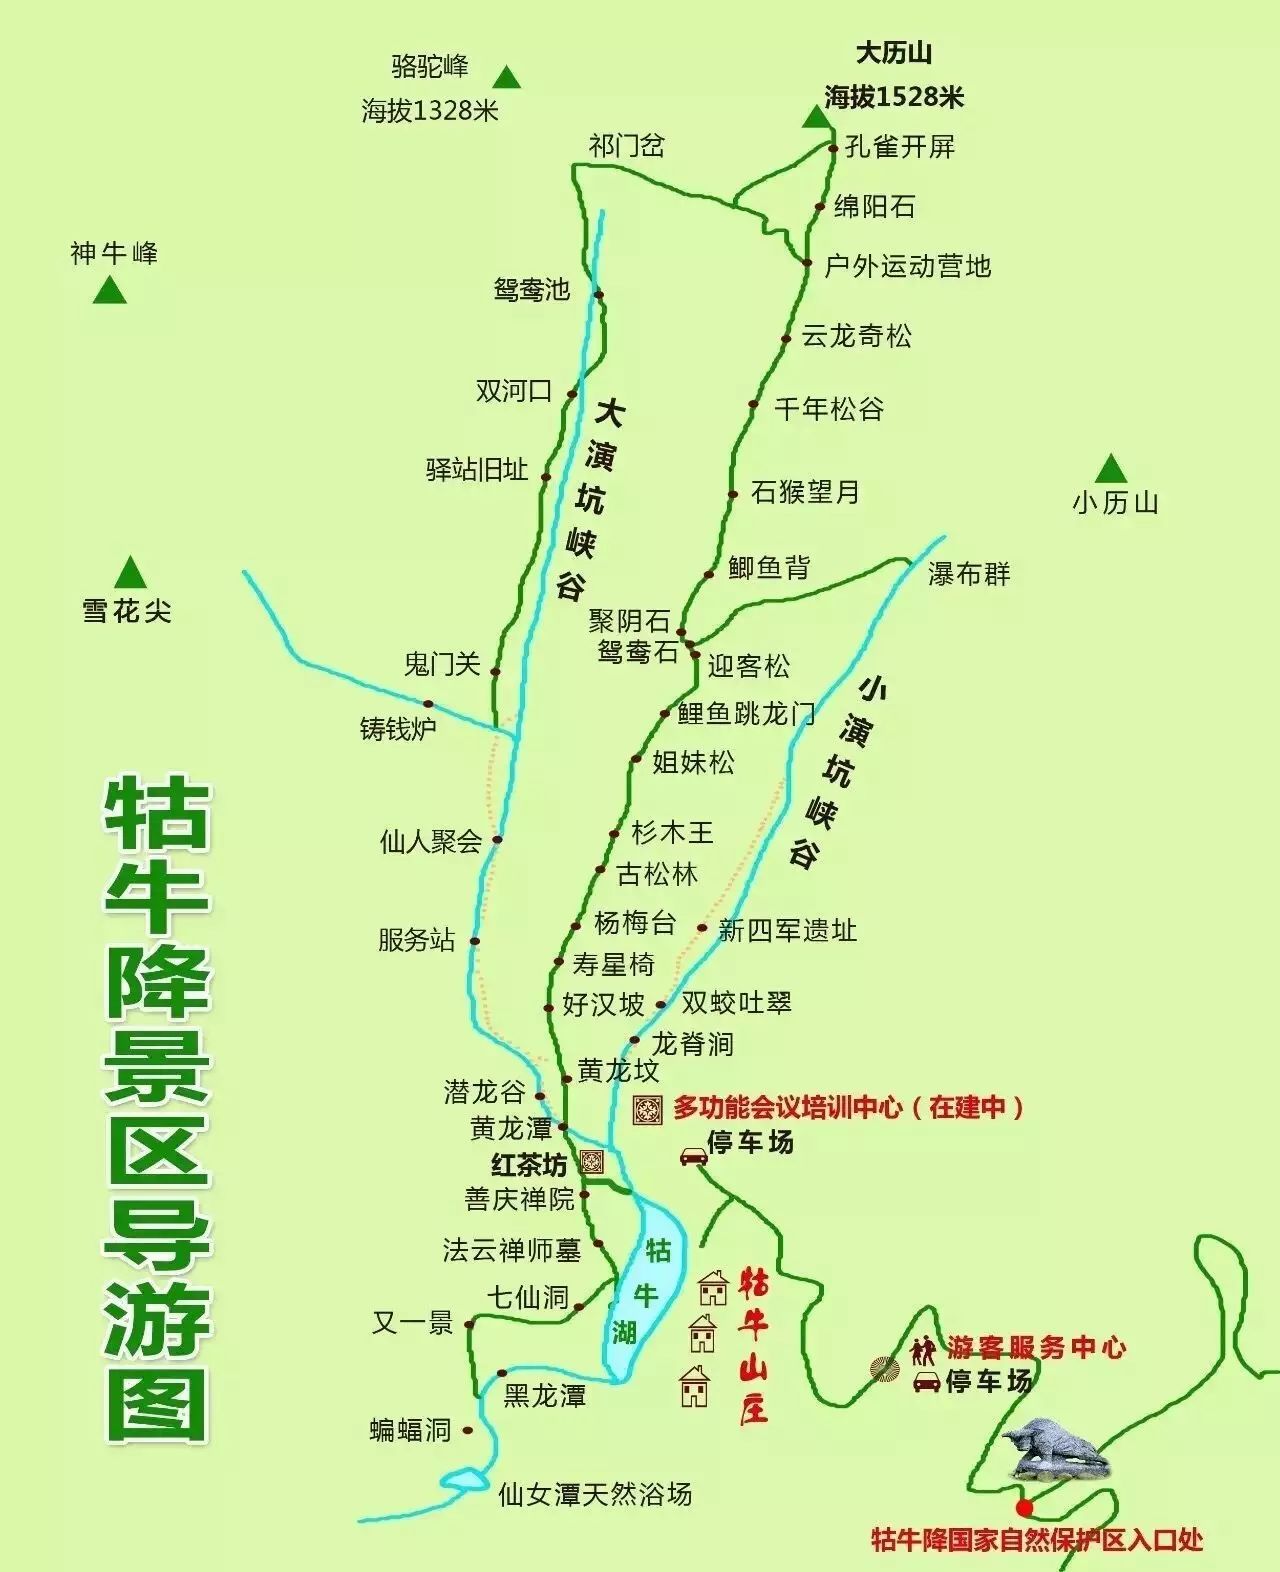 自驾导航至"祁门县牯牛降观音堂景区" 旅游地图